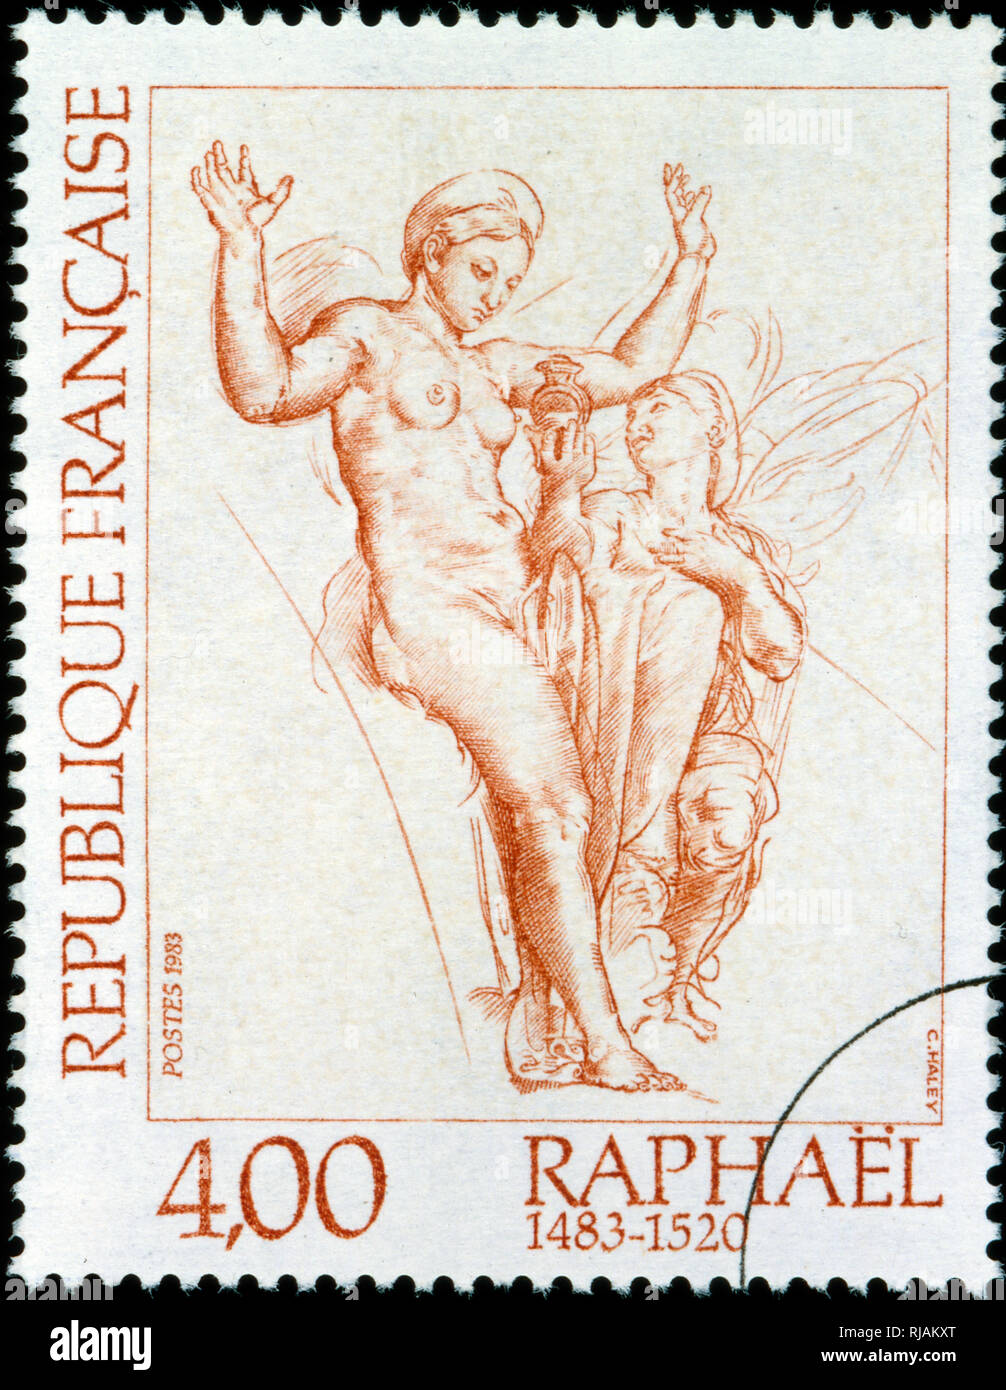 Timbre-poste français commémorant l'artiste italien de la Renaissance Raphaël. 1983 Banque D'Images